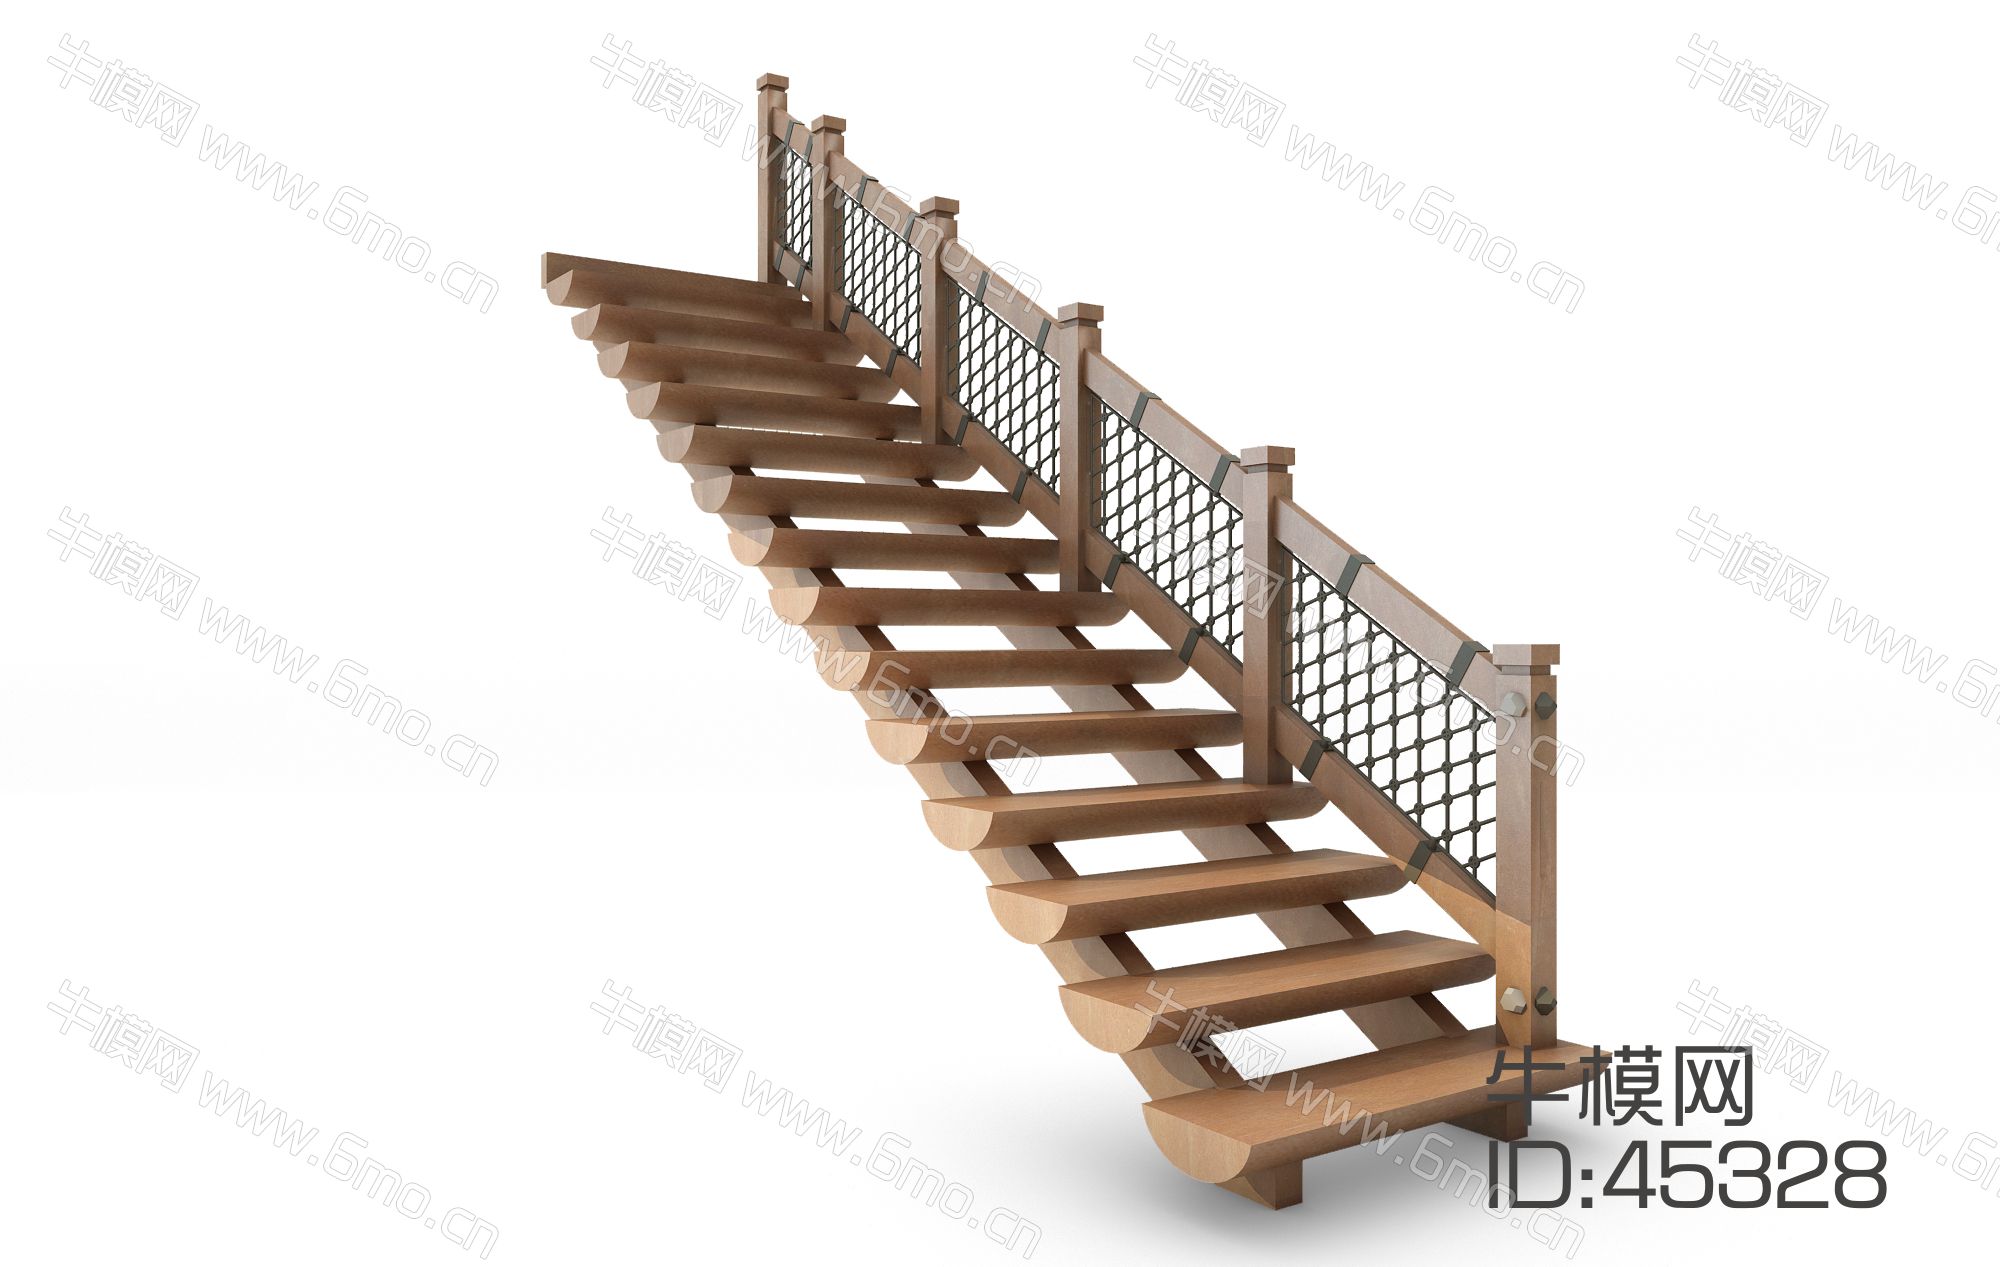 田园木质楼梯